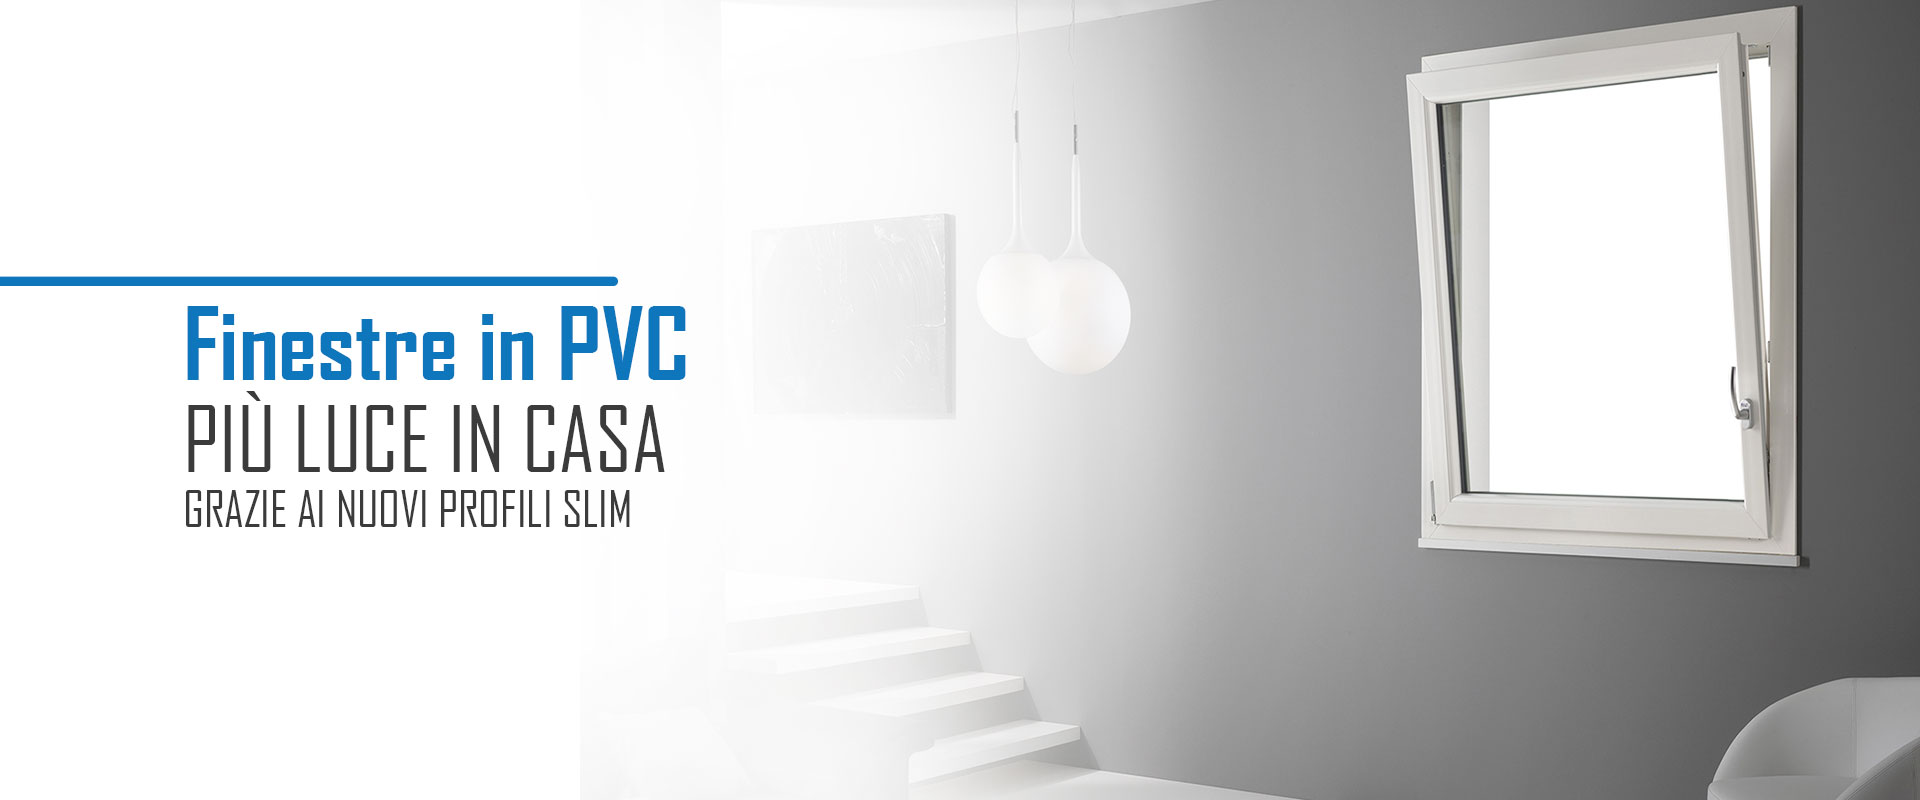 Pianeta Finestra - Più luce in casa con le finestra in PVC